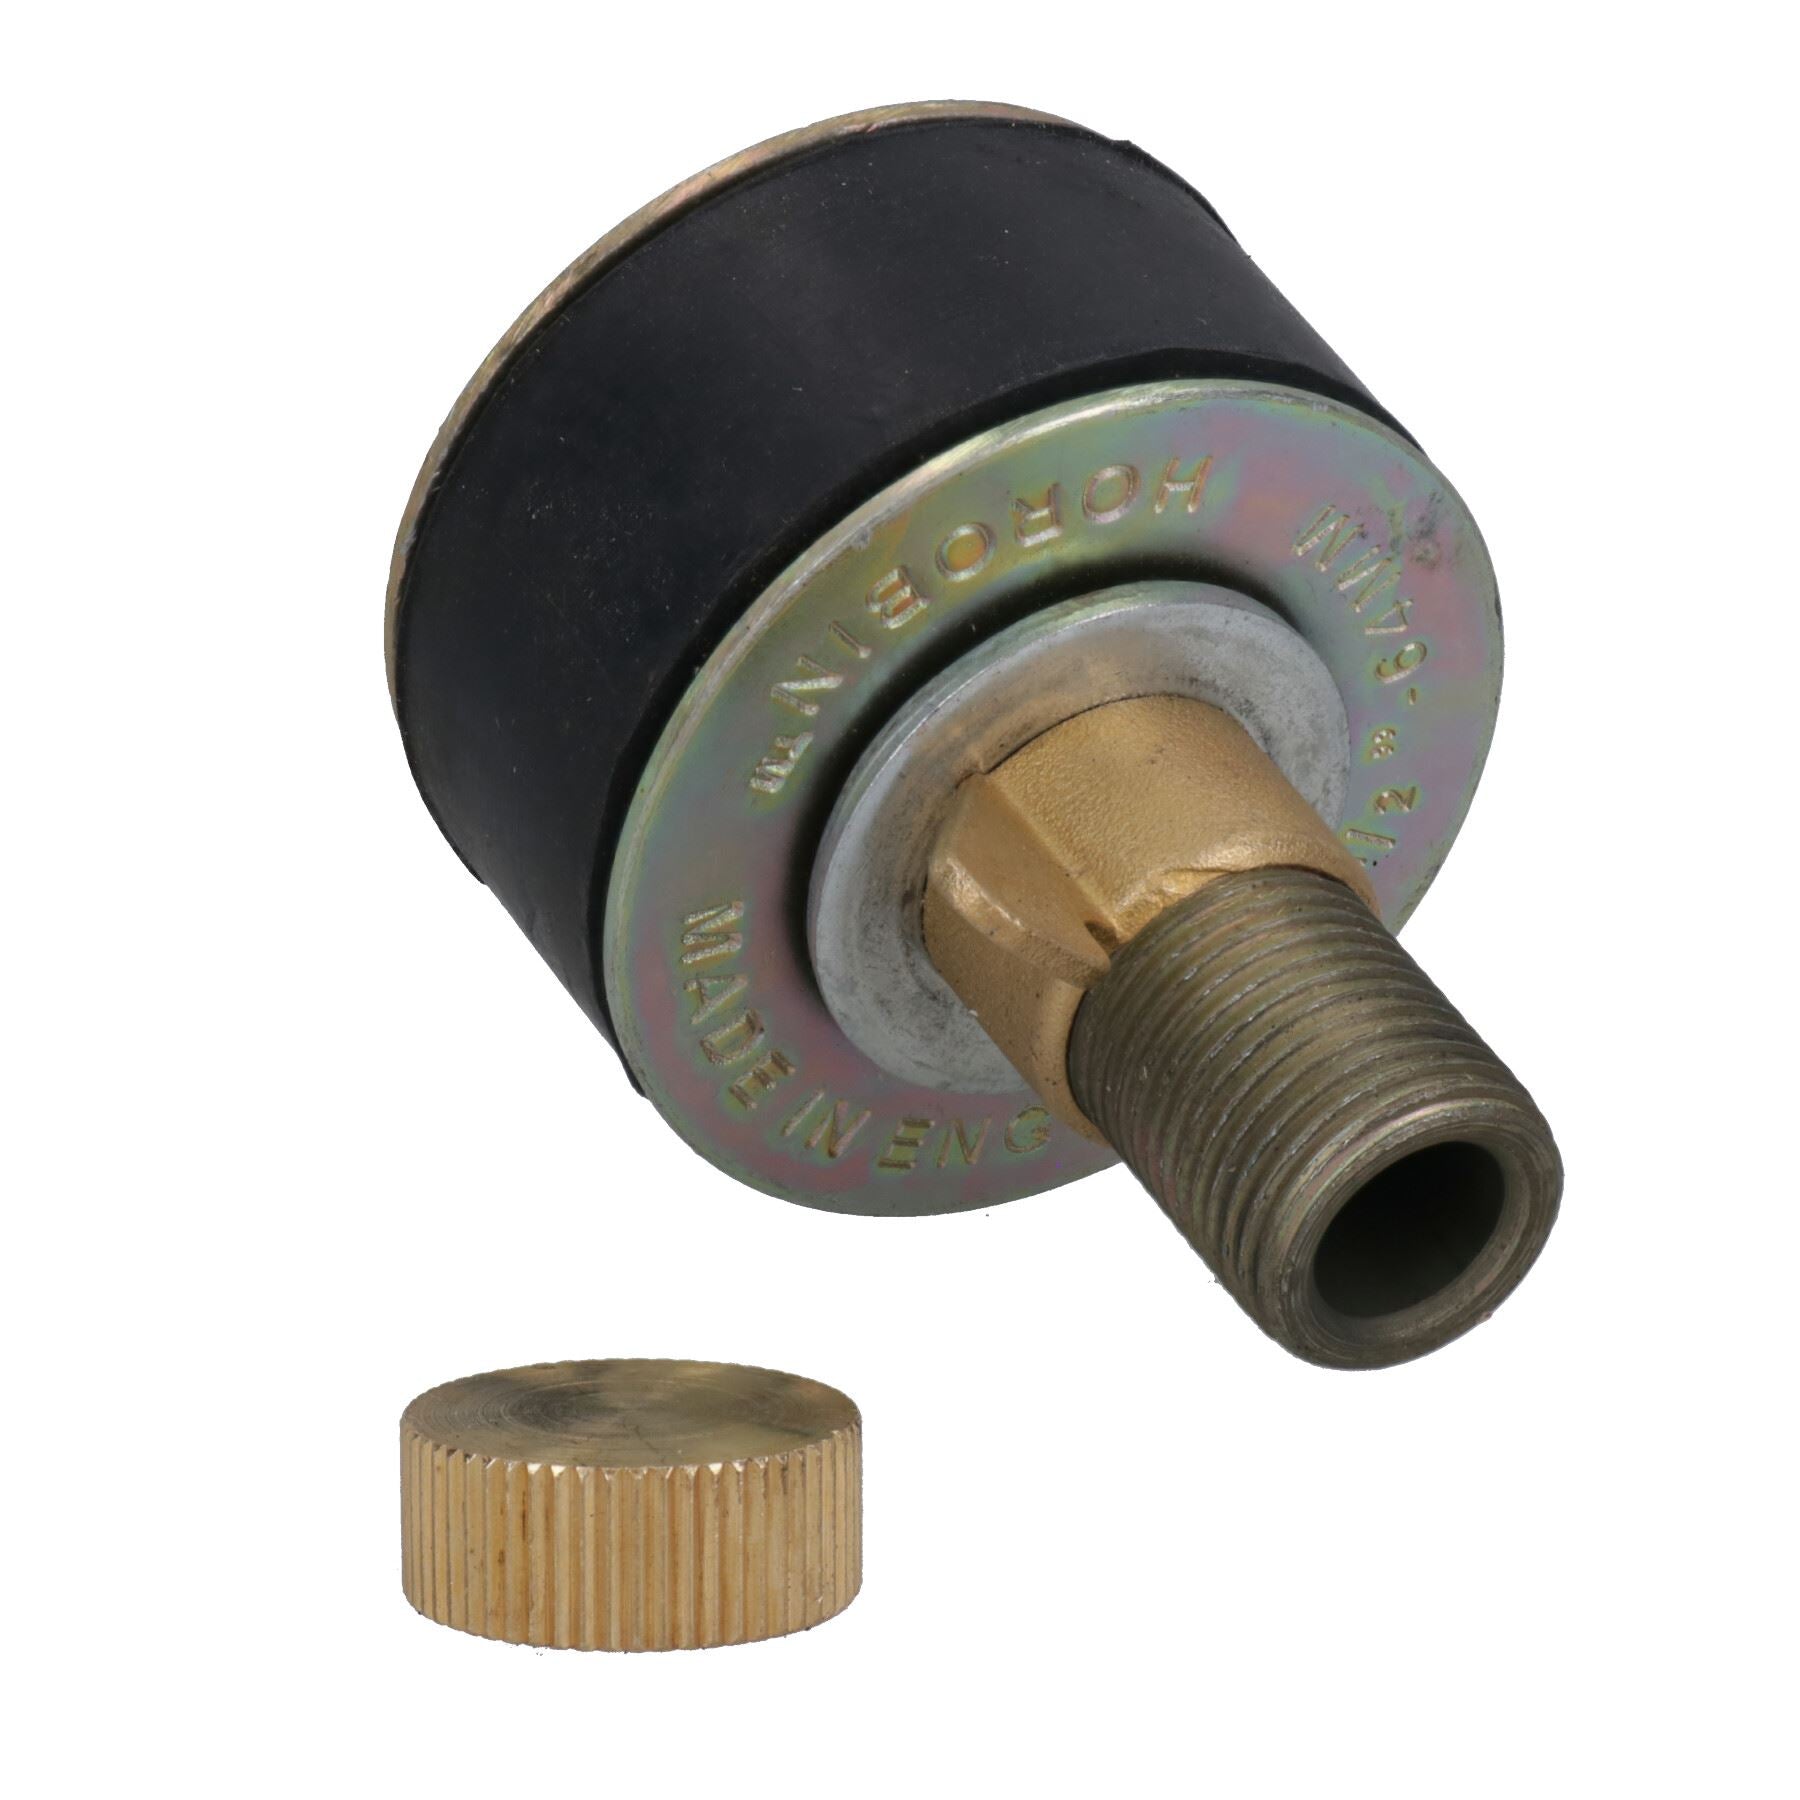 Steel Drain Test Pipe Bung / Plug 1-1/2" - 6" (40-150mm) Plumbing Stop Blanking